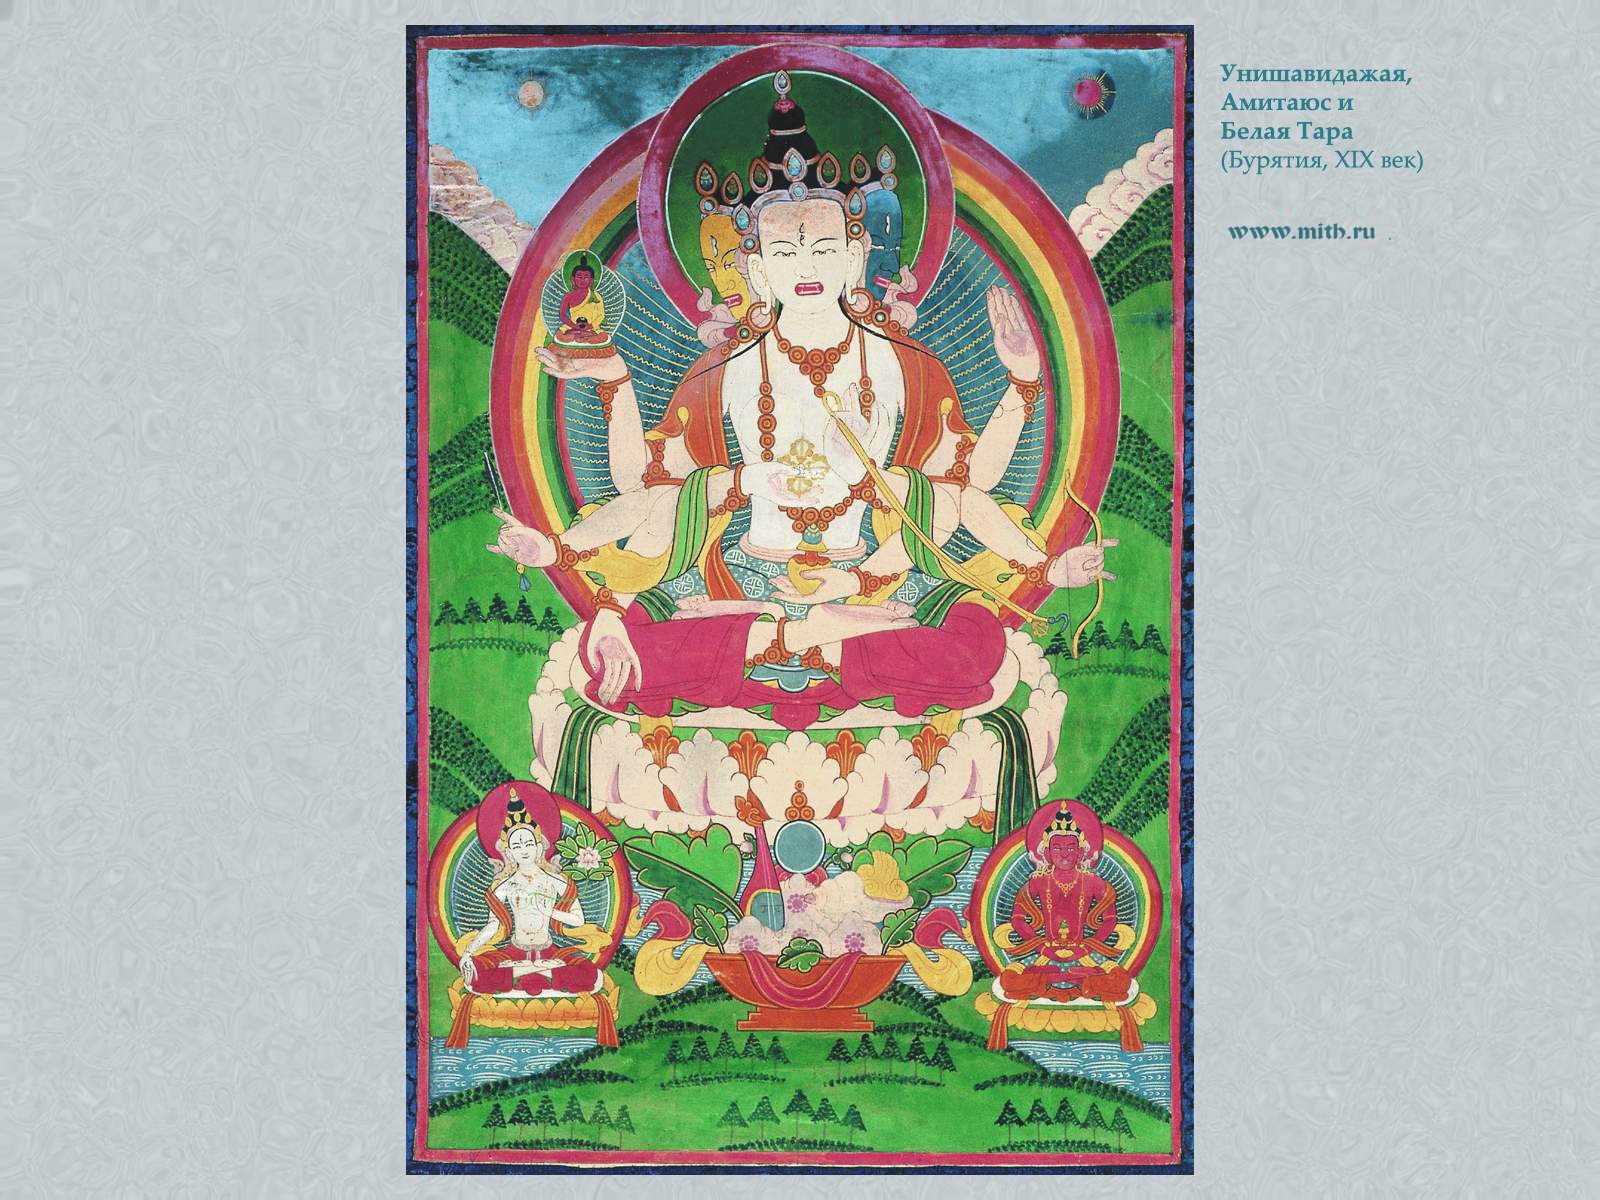 Ушнишавиджая, 
Амитаюс, Белая Тара

перейти к книге 'Тибетская живопись'